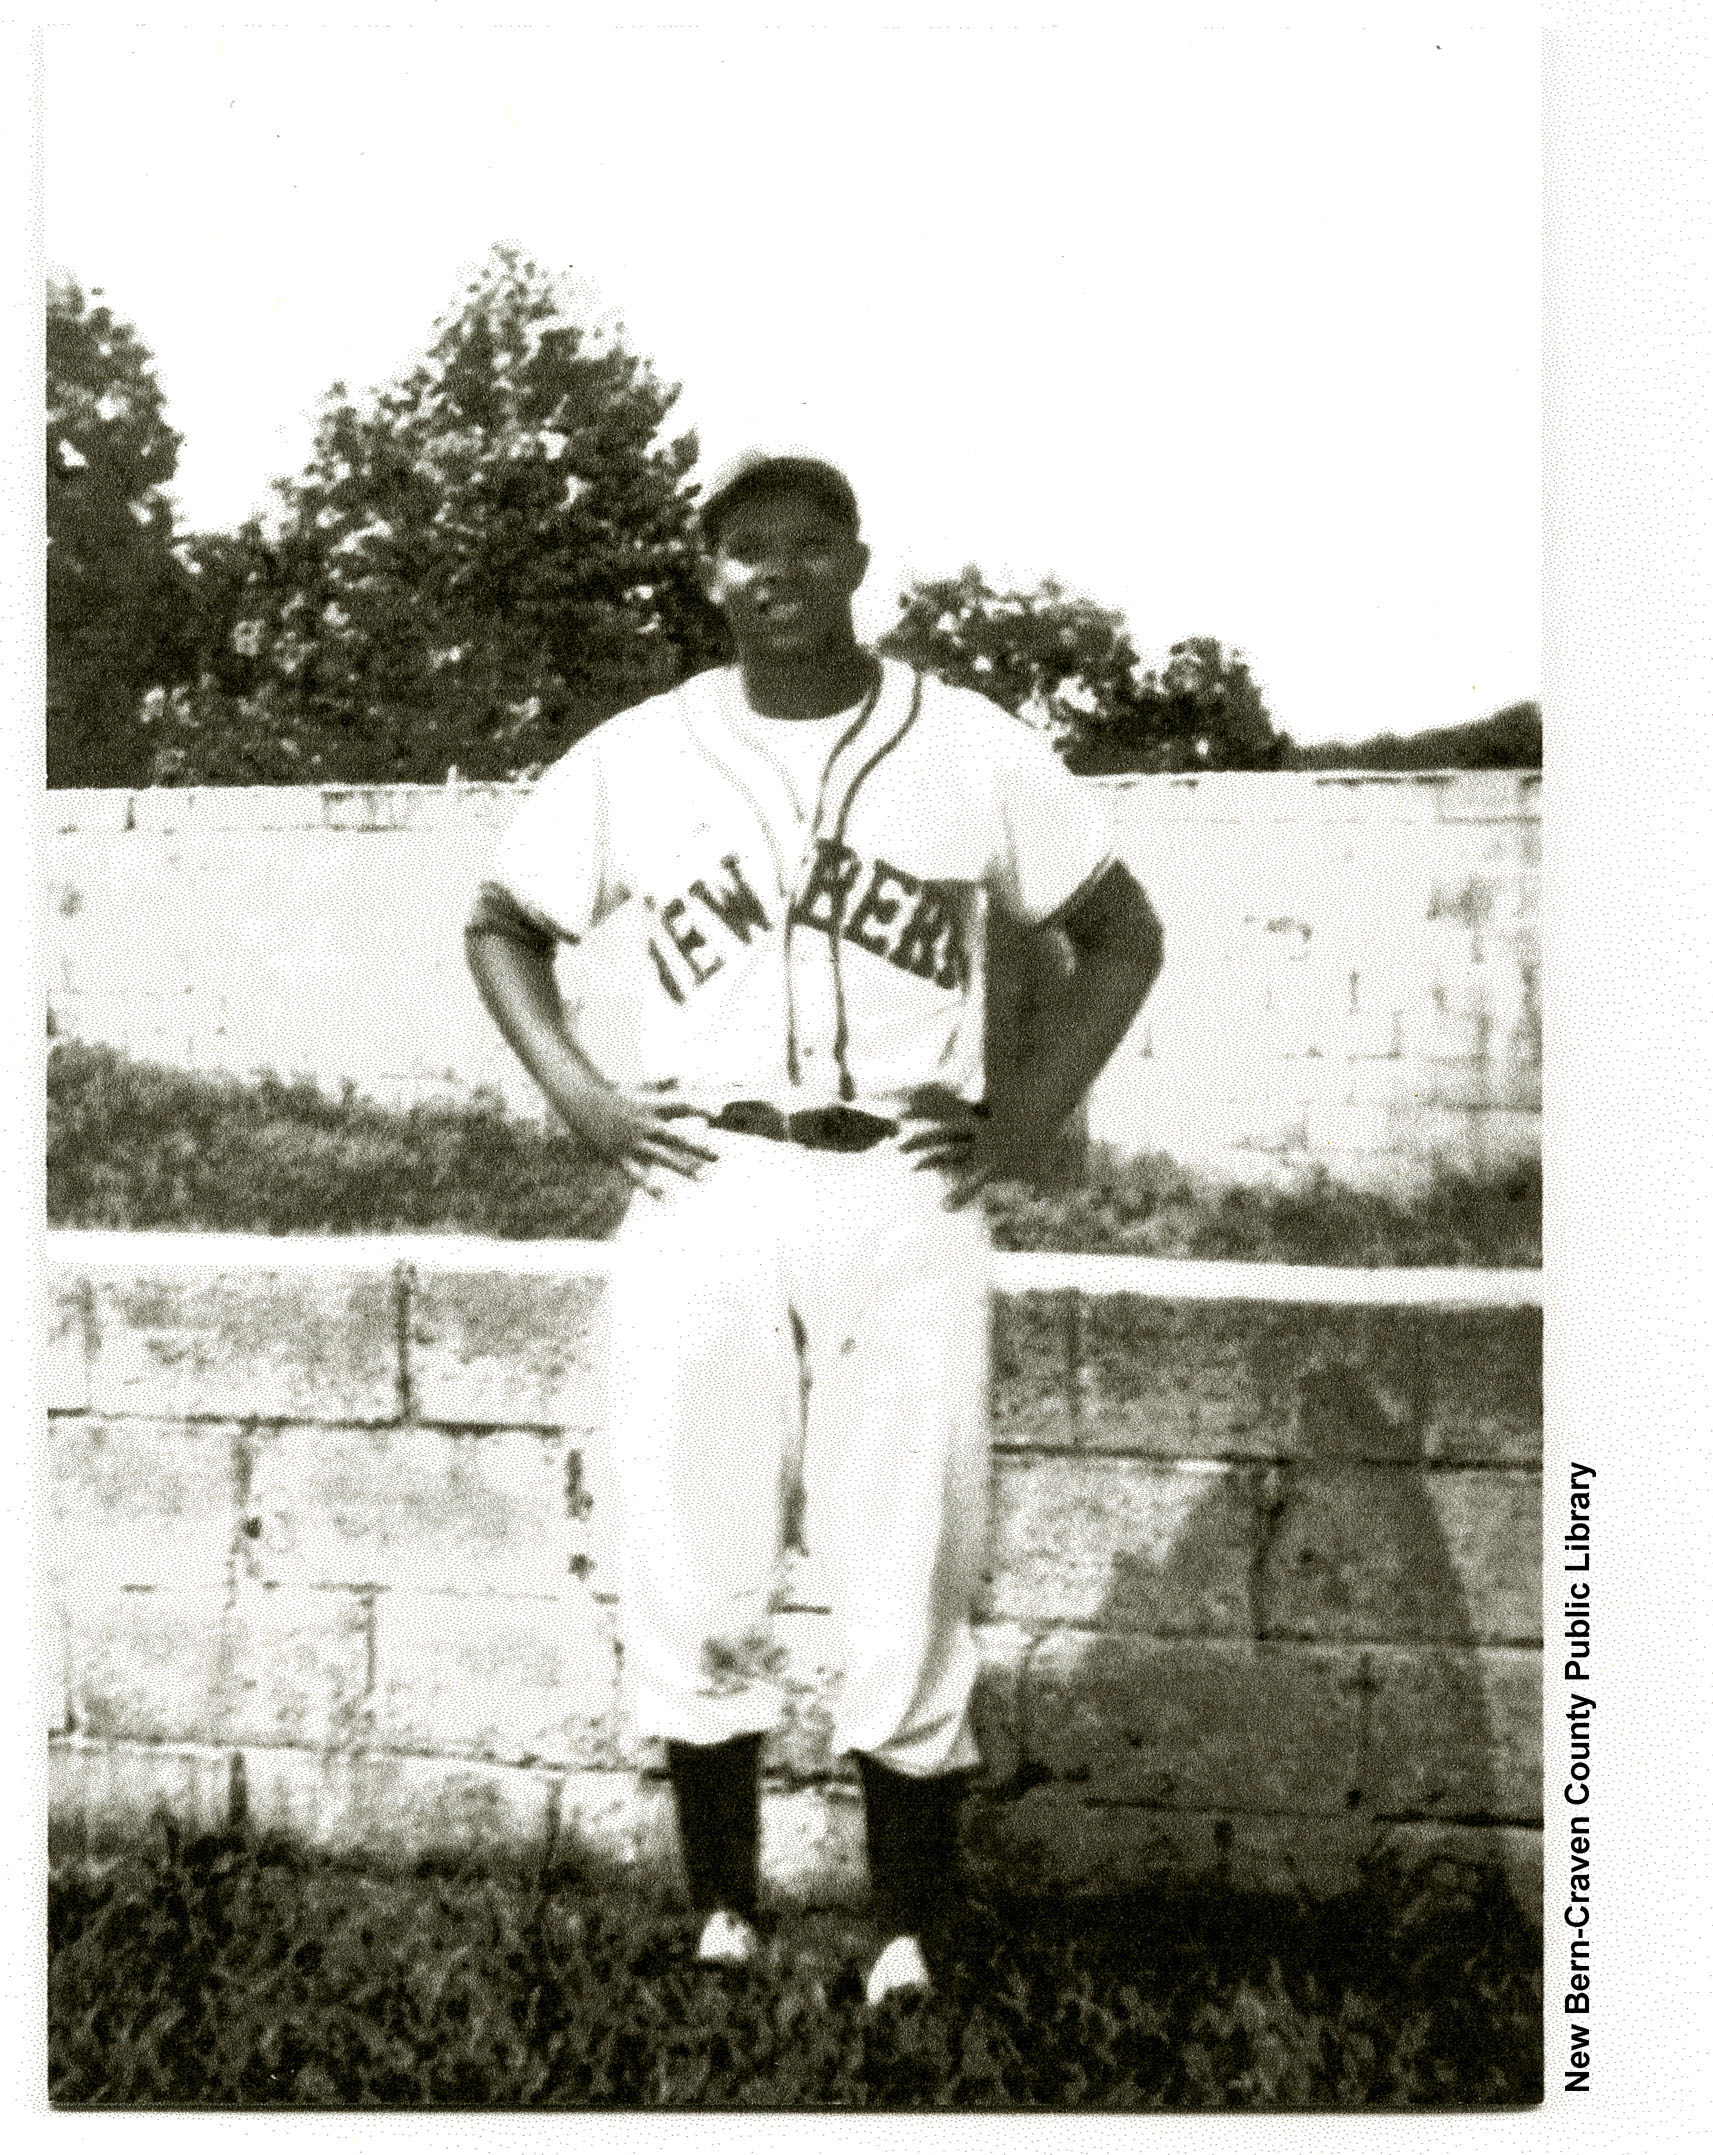 Stanley White in baseball uniform